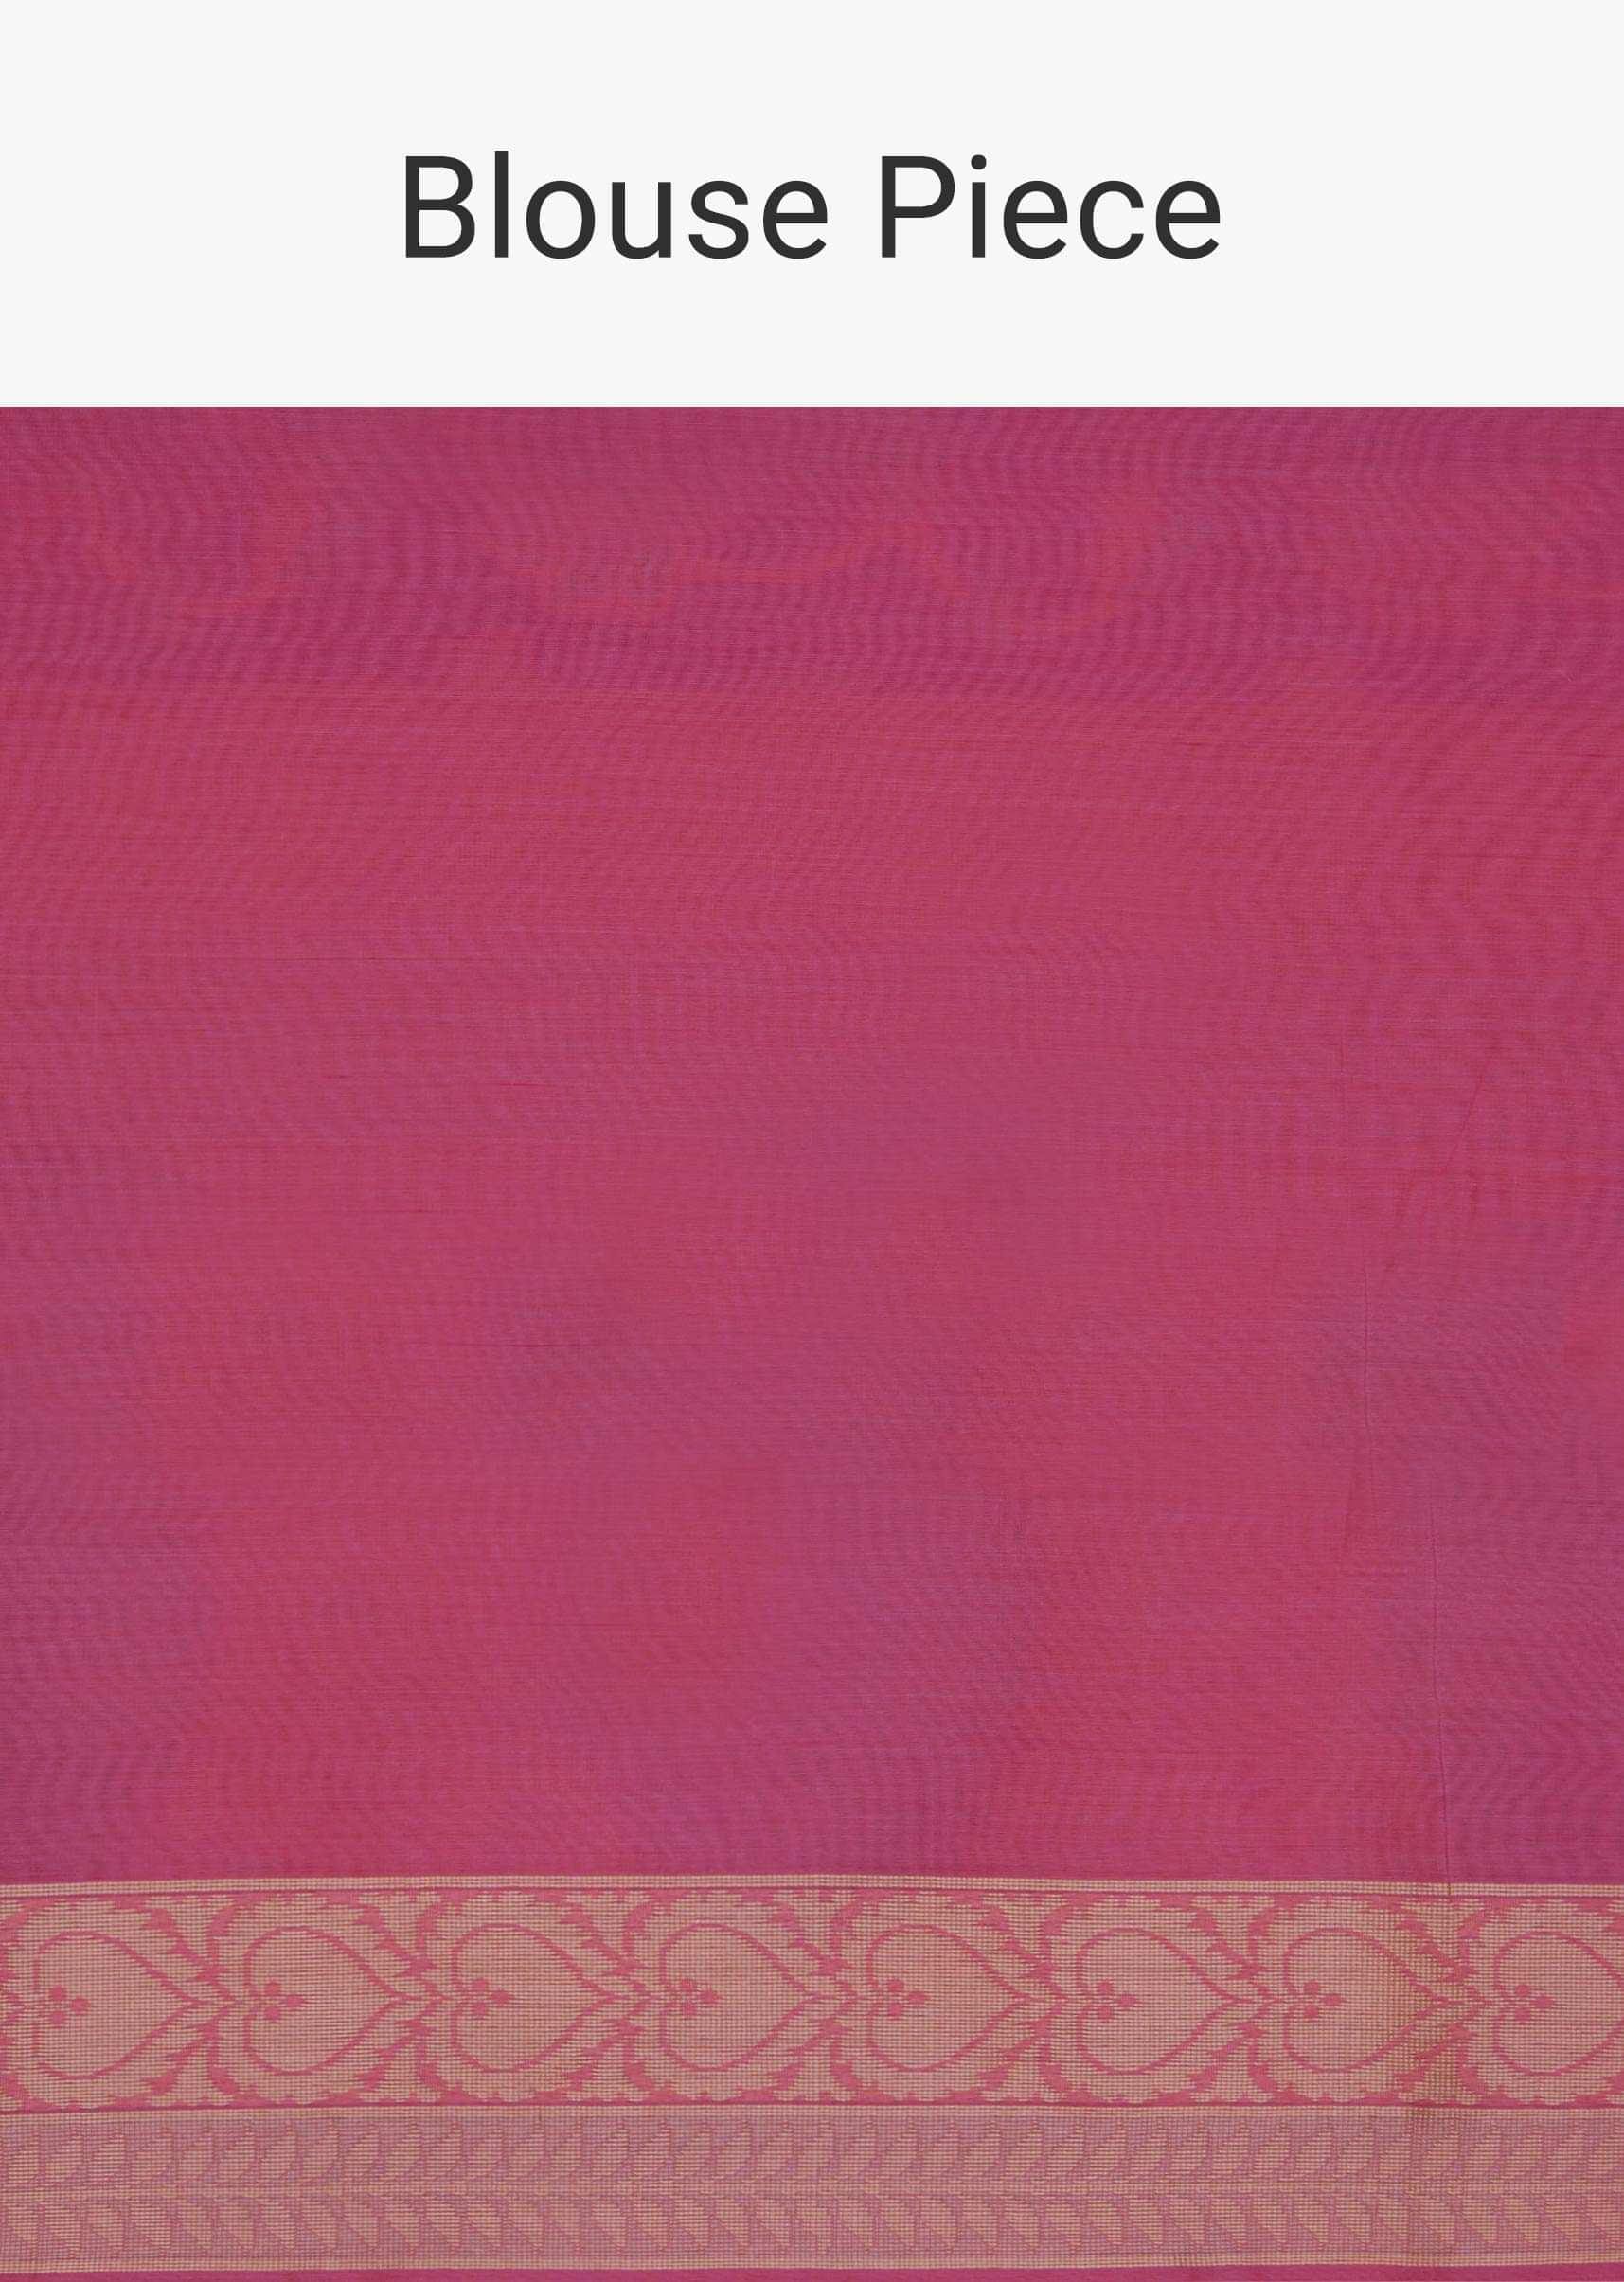 Pink weaved saree in rose motifs